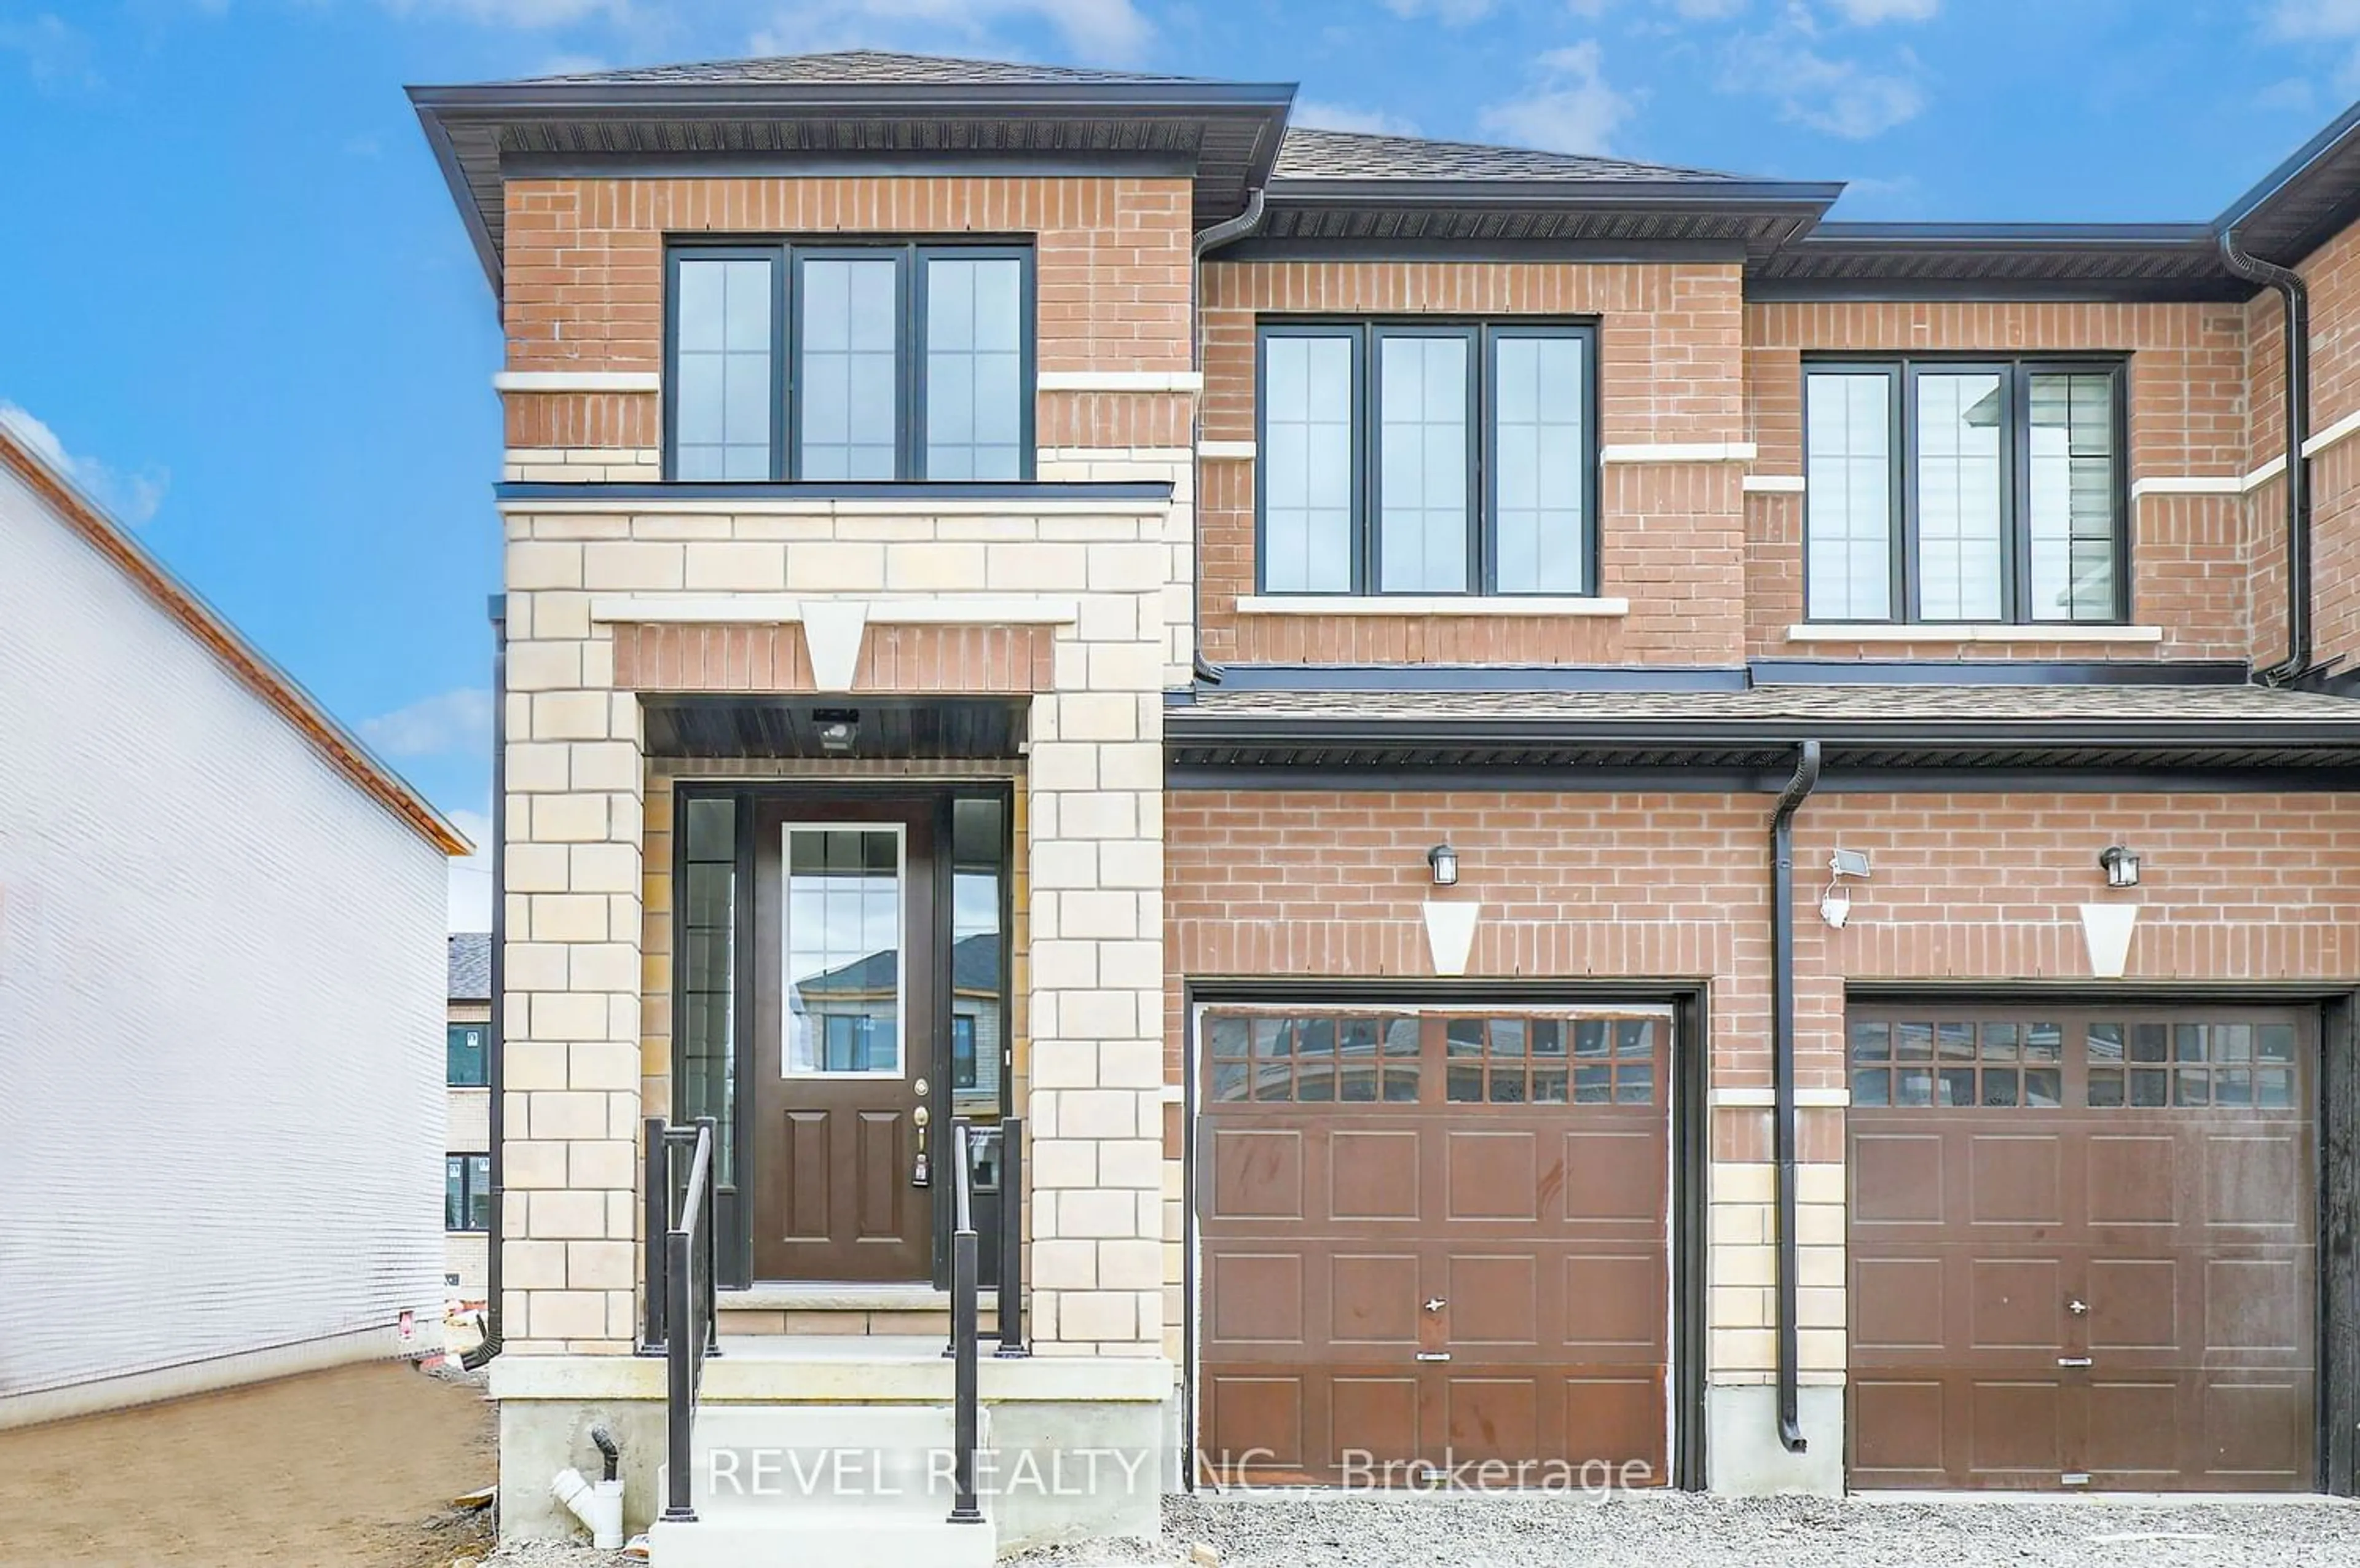 Home with brick exterior material for 26 Keenan St, Kawartha Lakes Ontario K9V 6C2